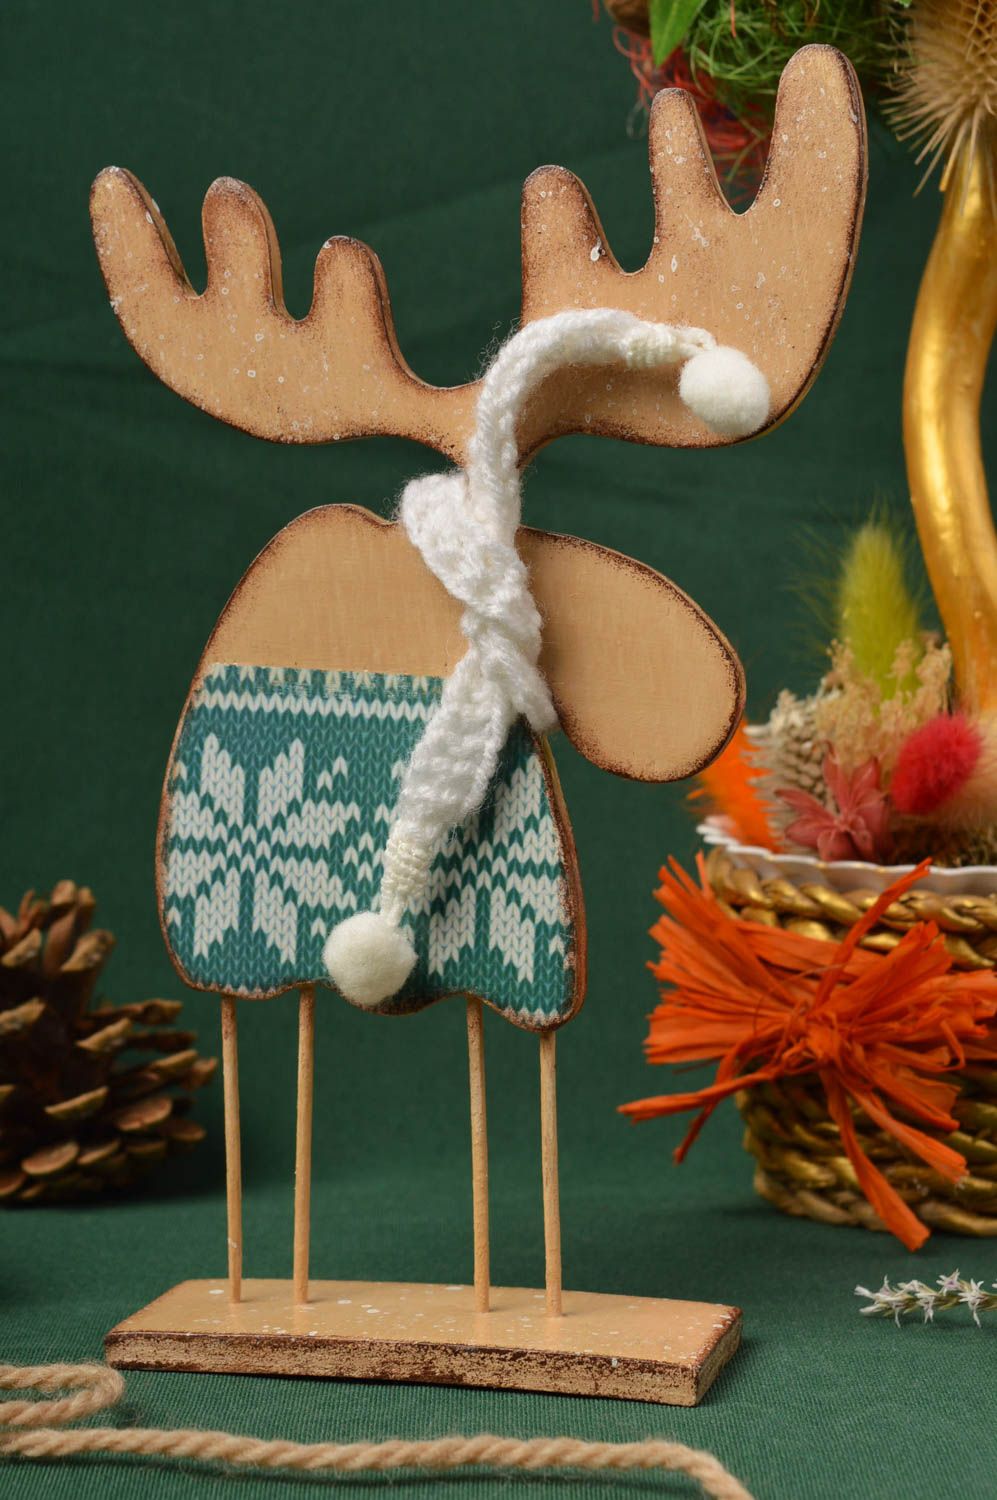 Decoupage Christmas toys handmade table decor ideas decorative use only photo 1